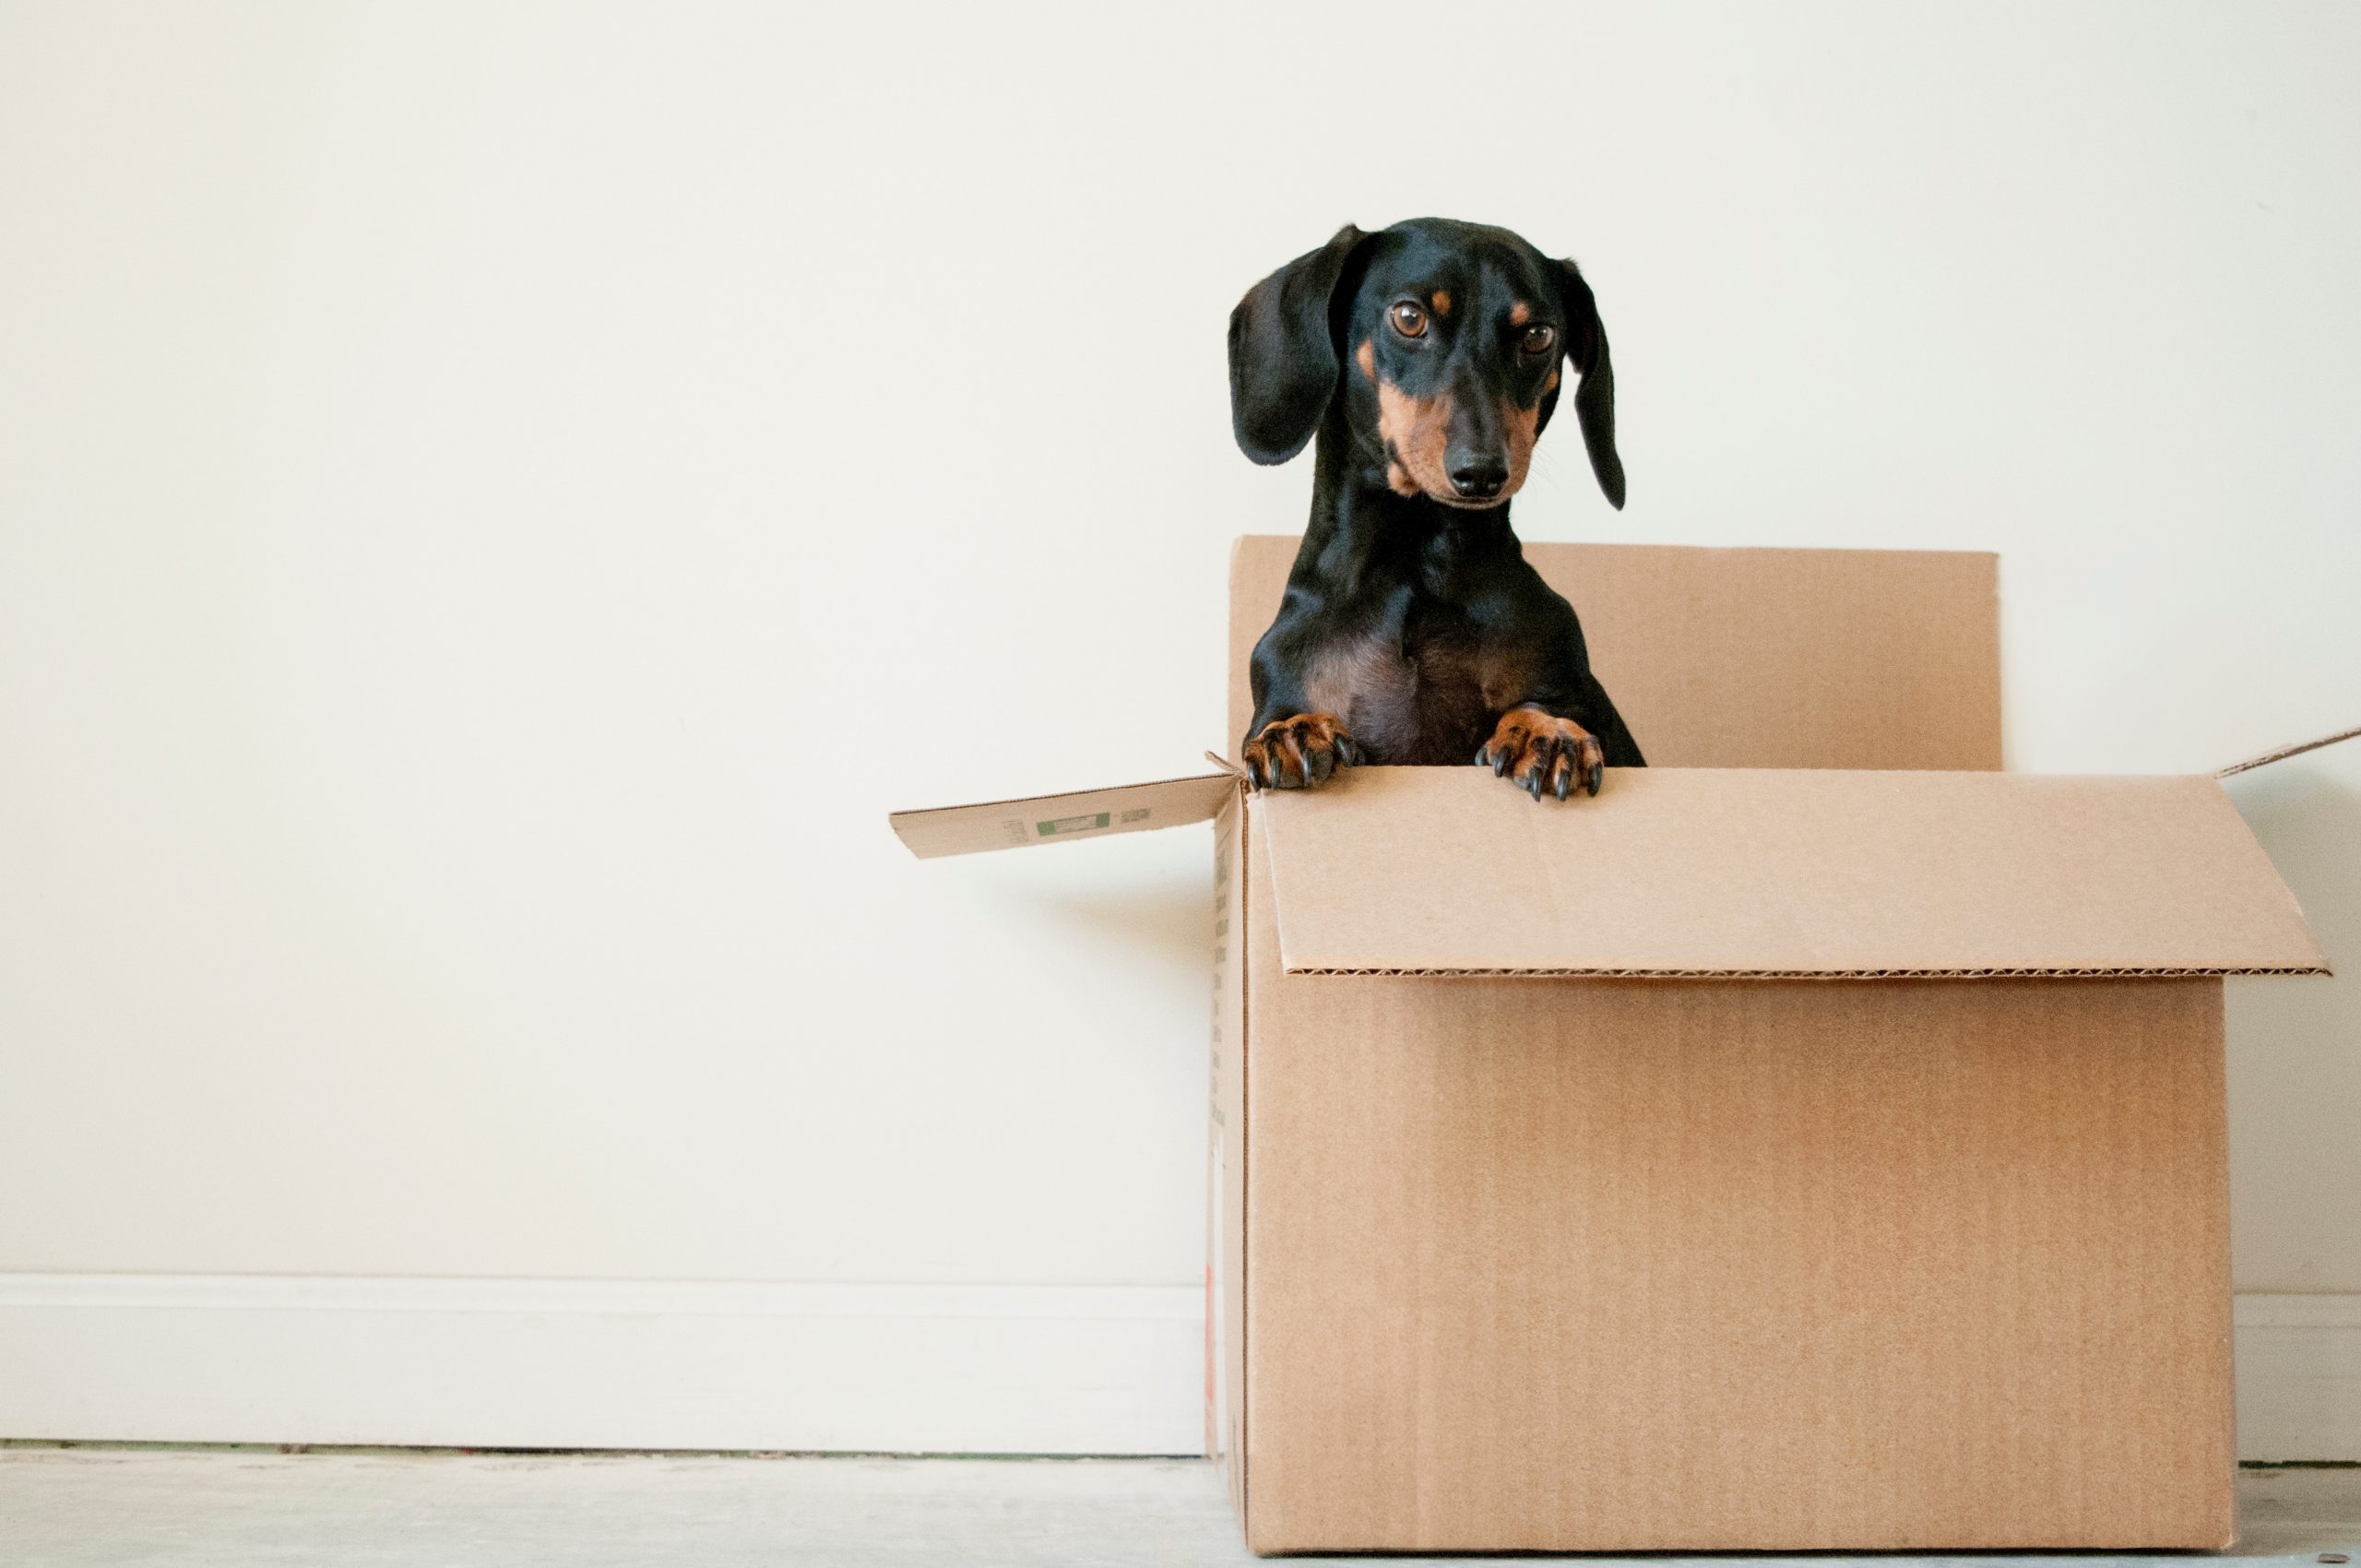 A dachshund in a box